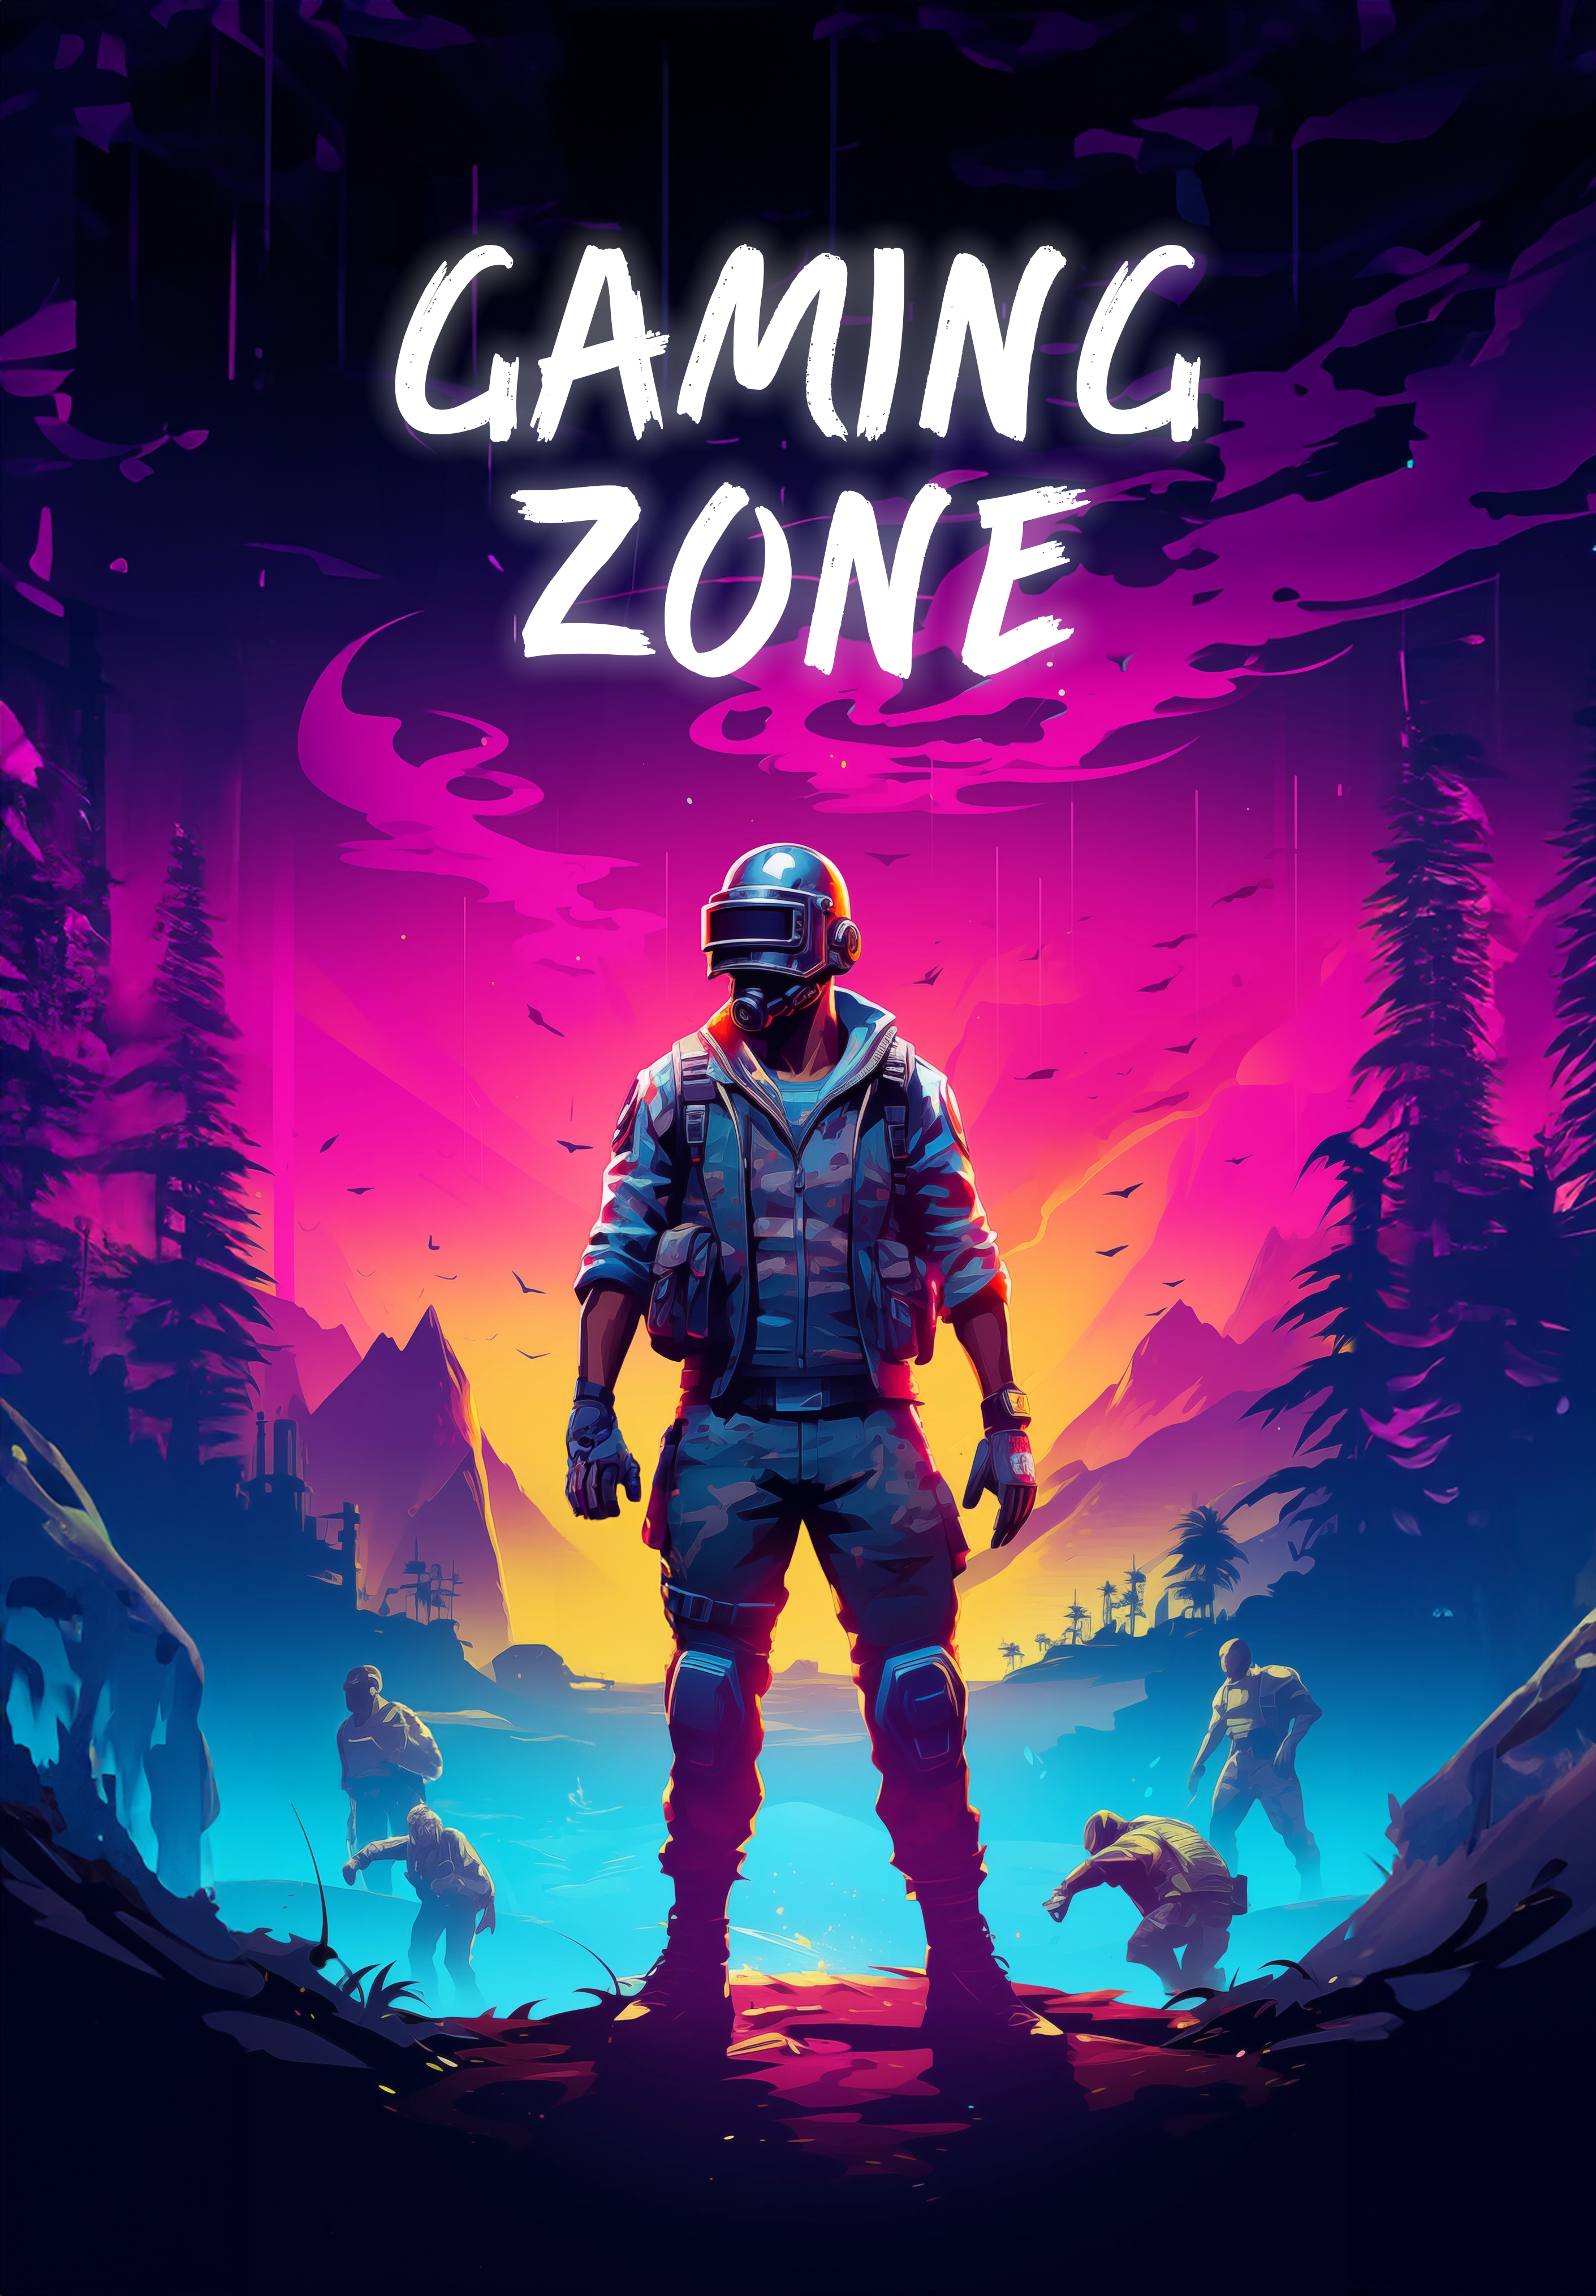 Affisch "Gaming Zone"